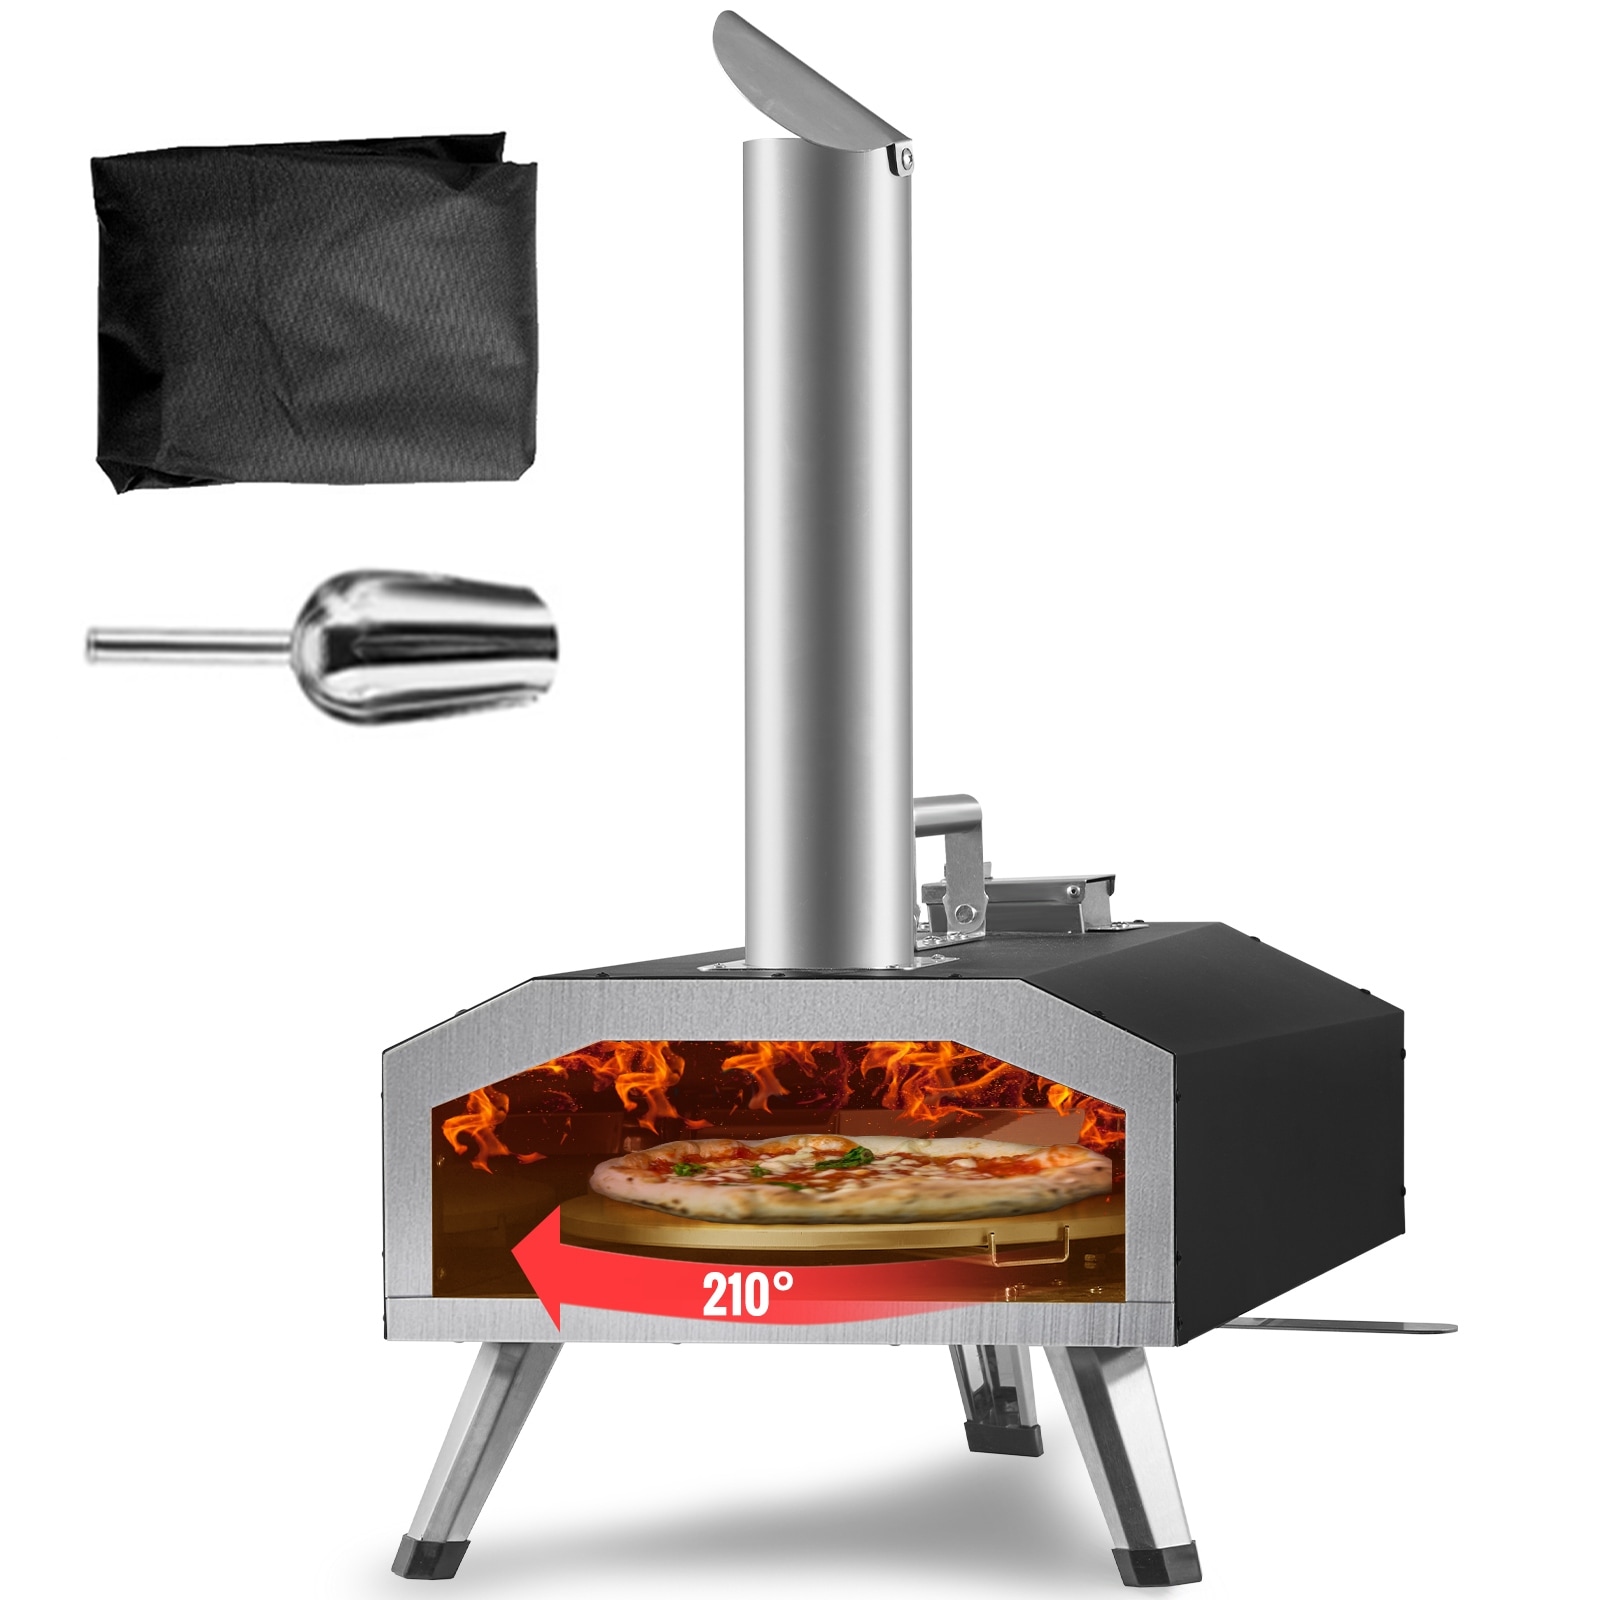 Granitestone Piezano Indoor/Outdoor Electric Pizza Oven ,Black